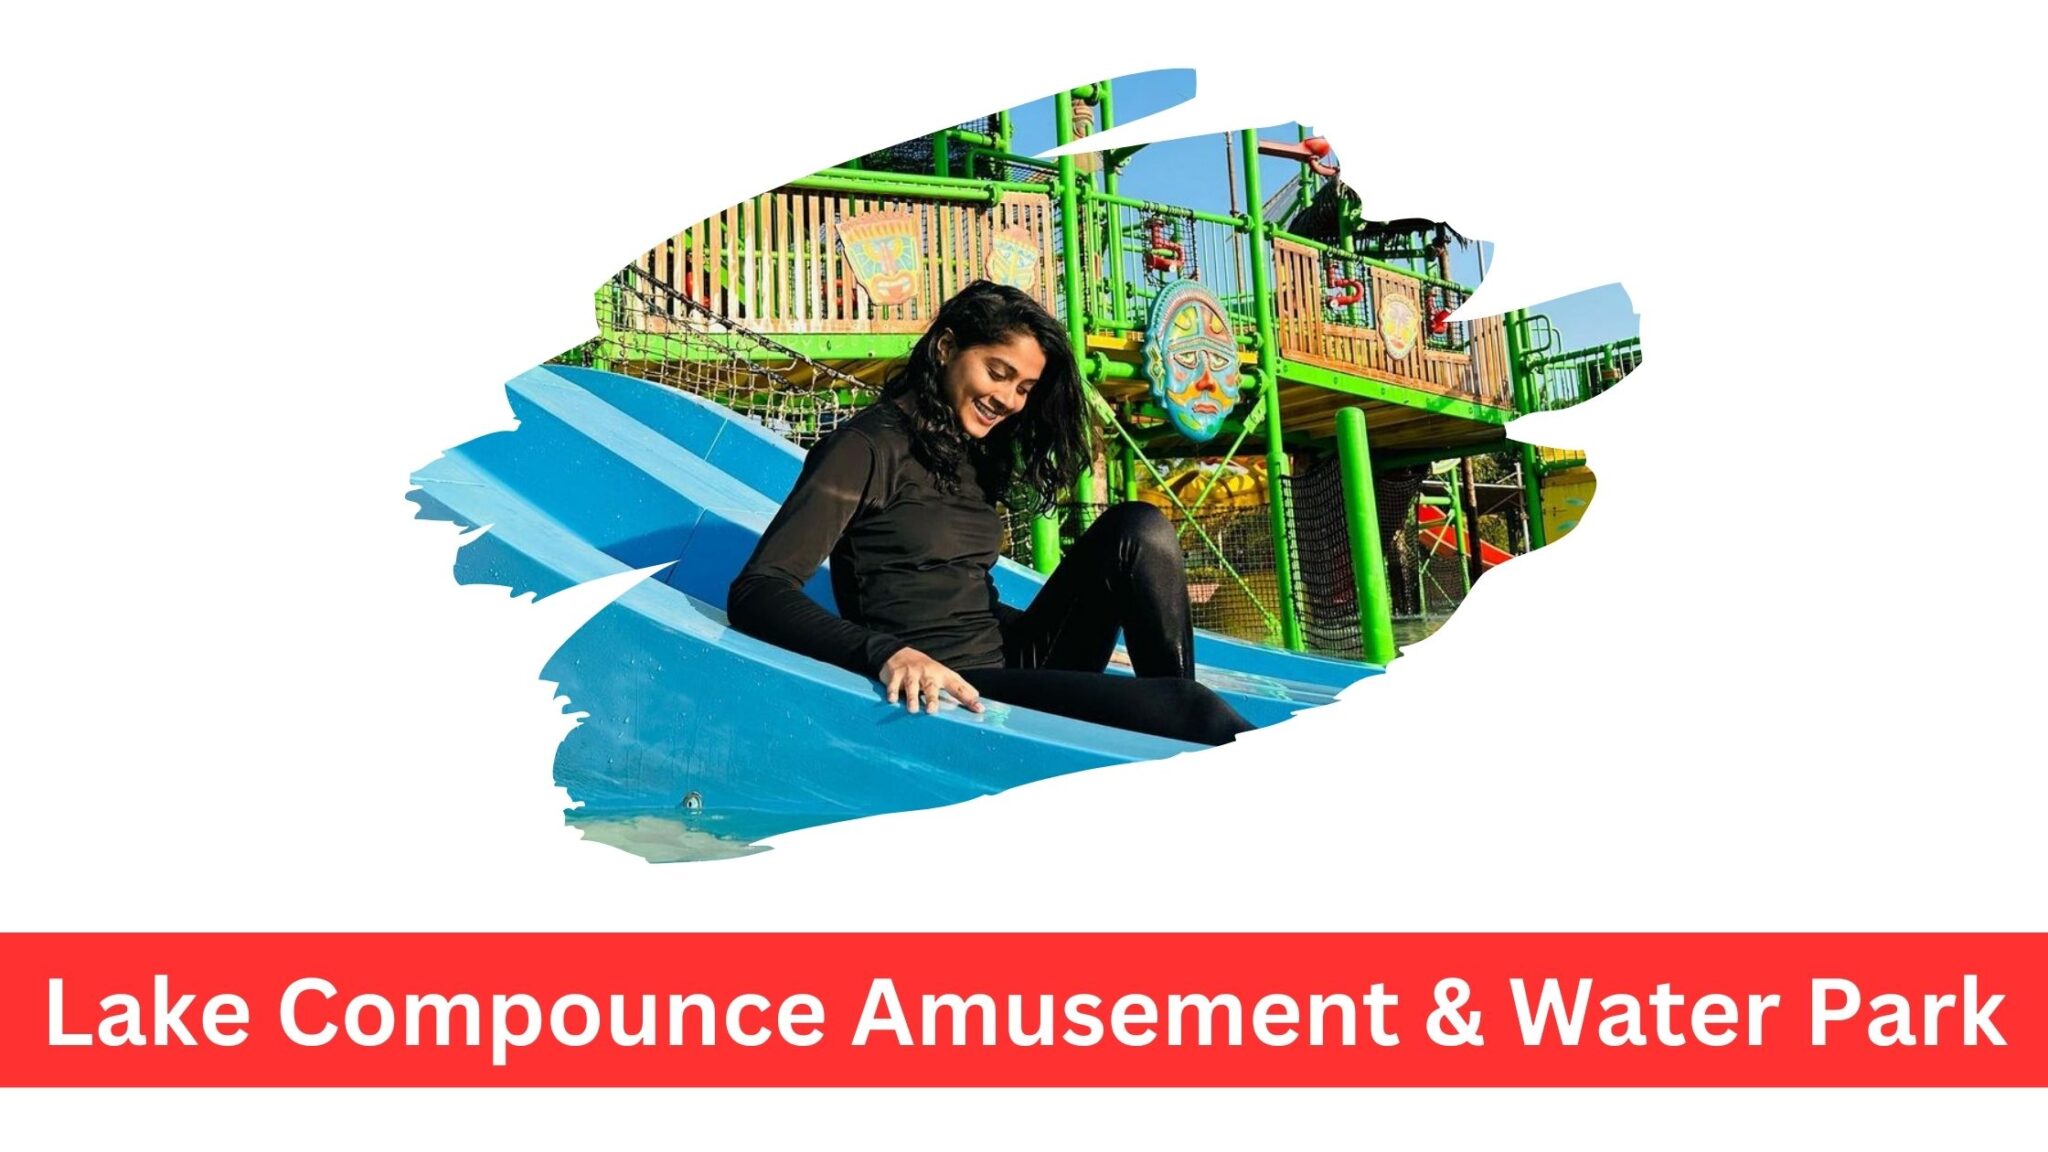 Lake Compounce Amusement & Water Park